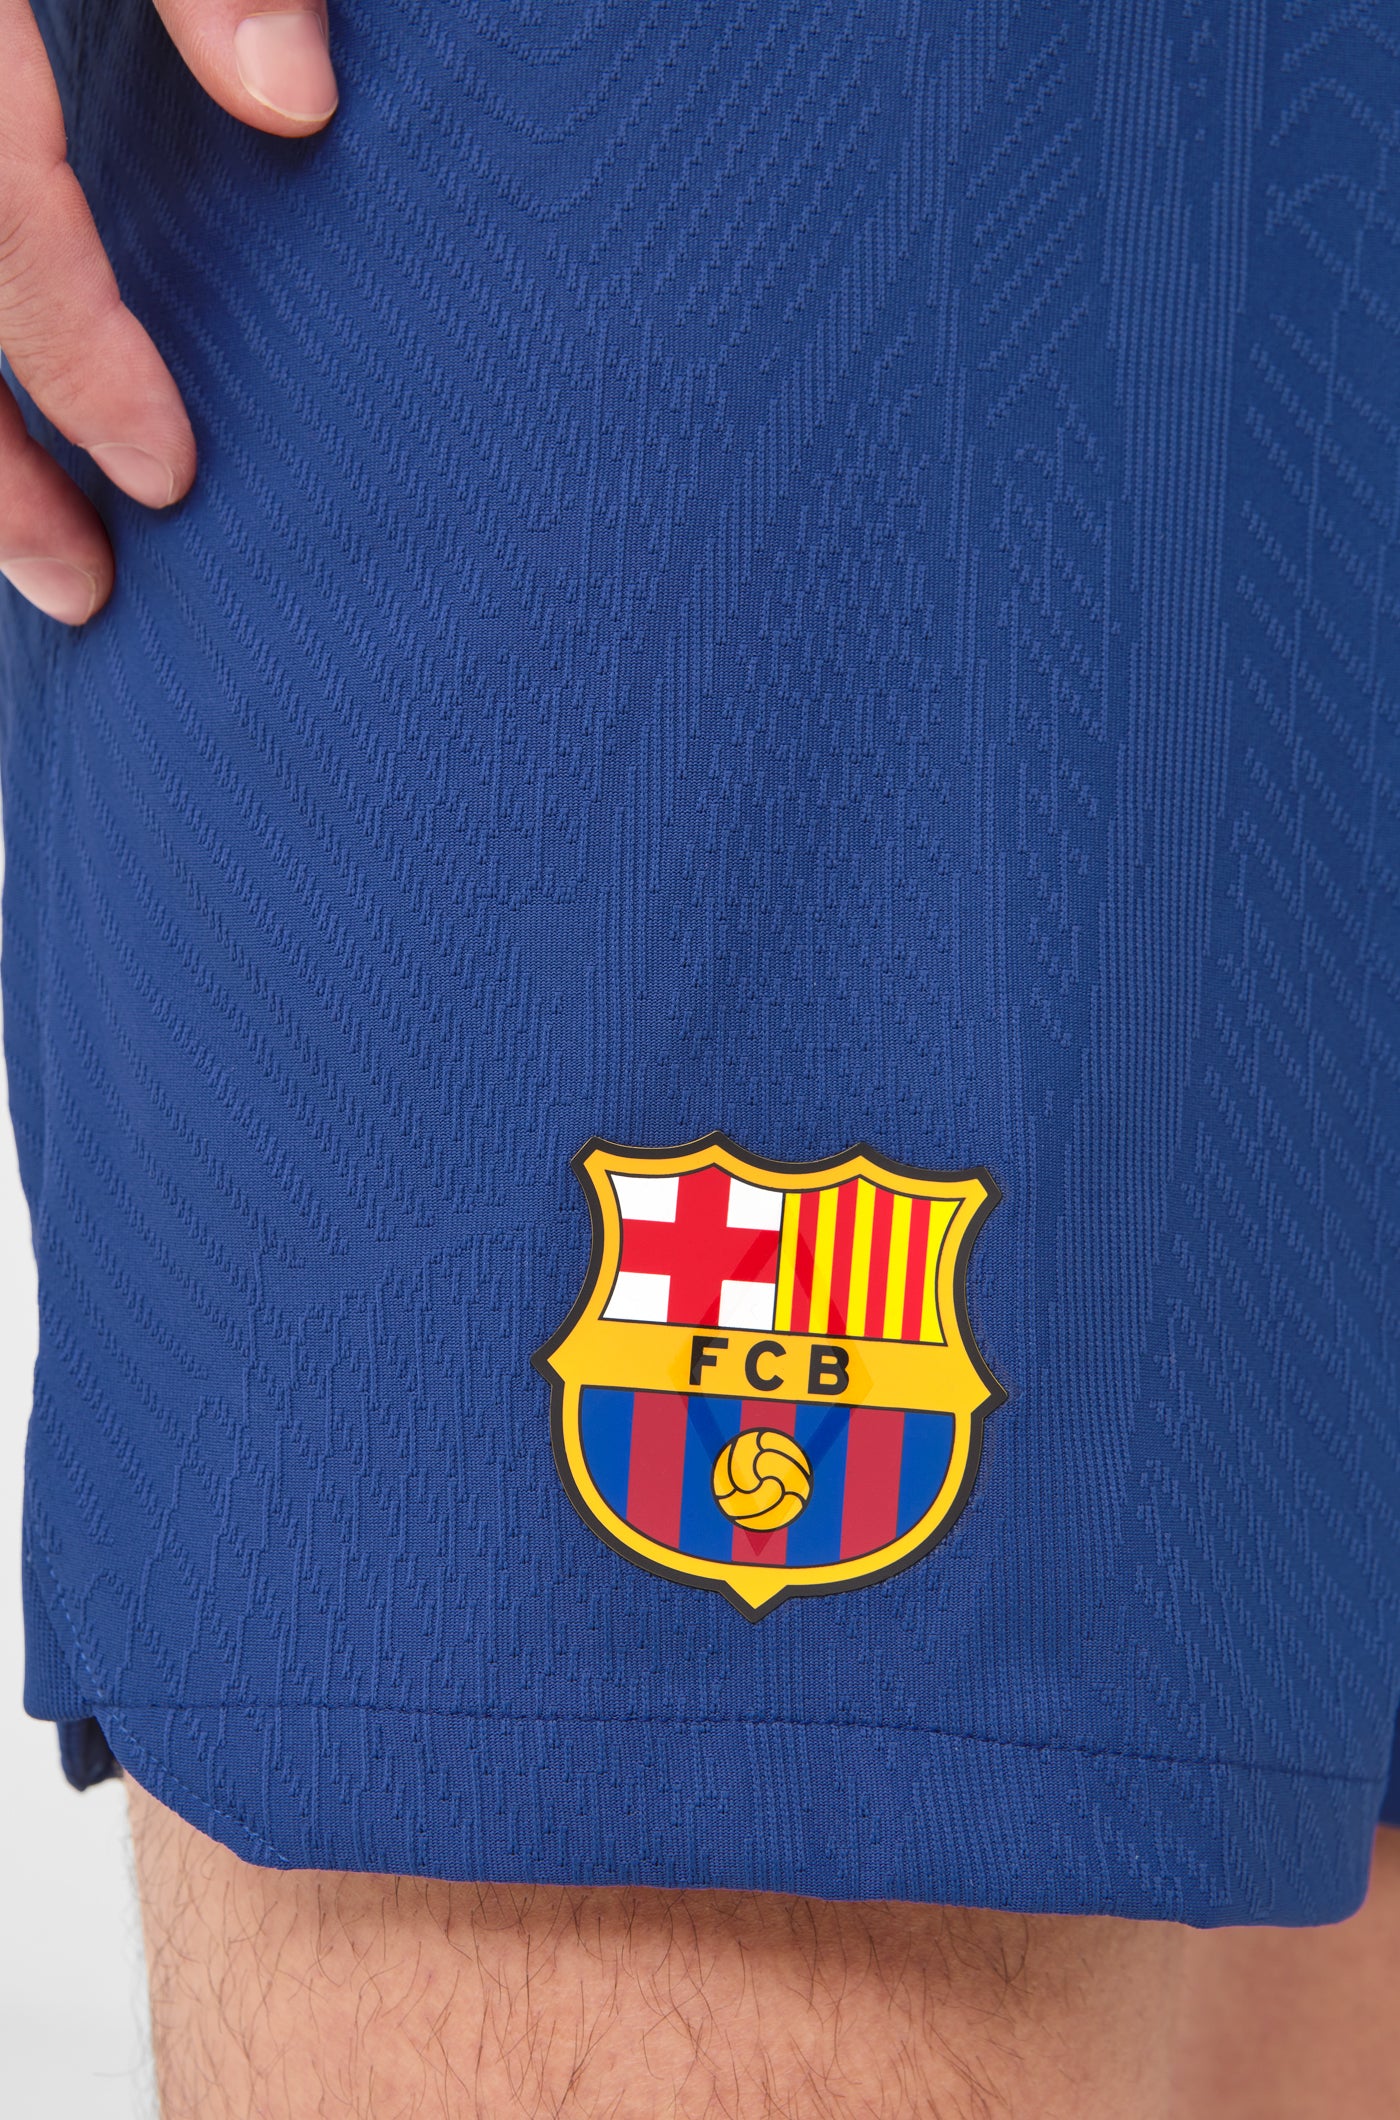 Pantalons primer equipament FC Barcelona 23/24 Edició Jugador